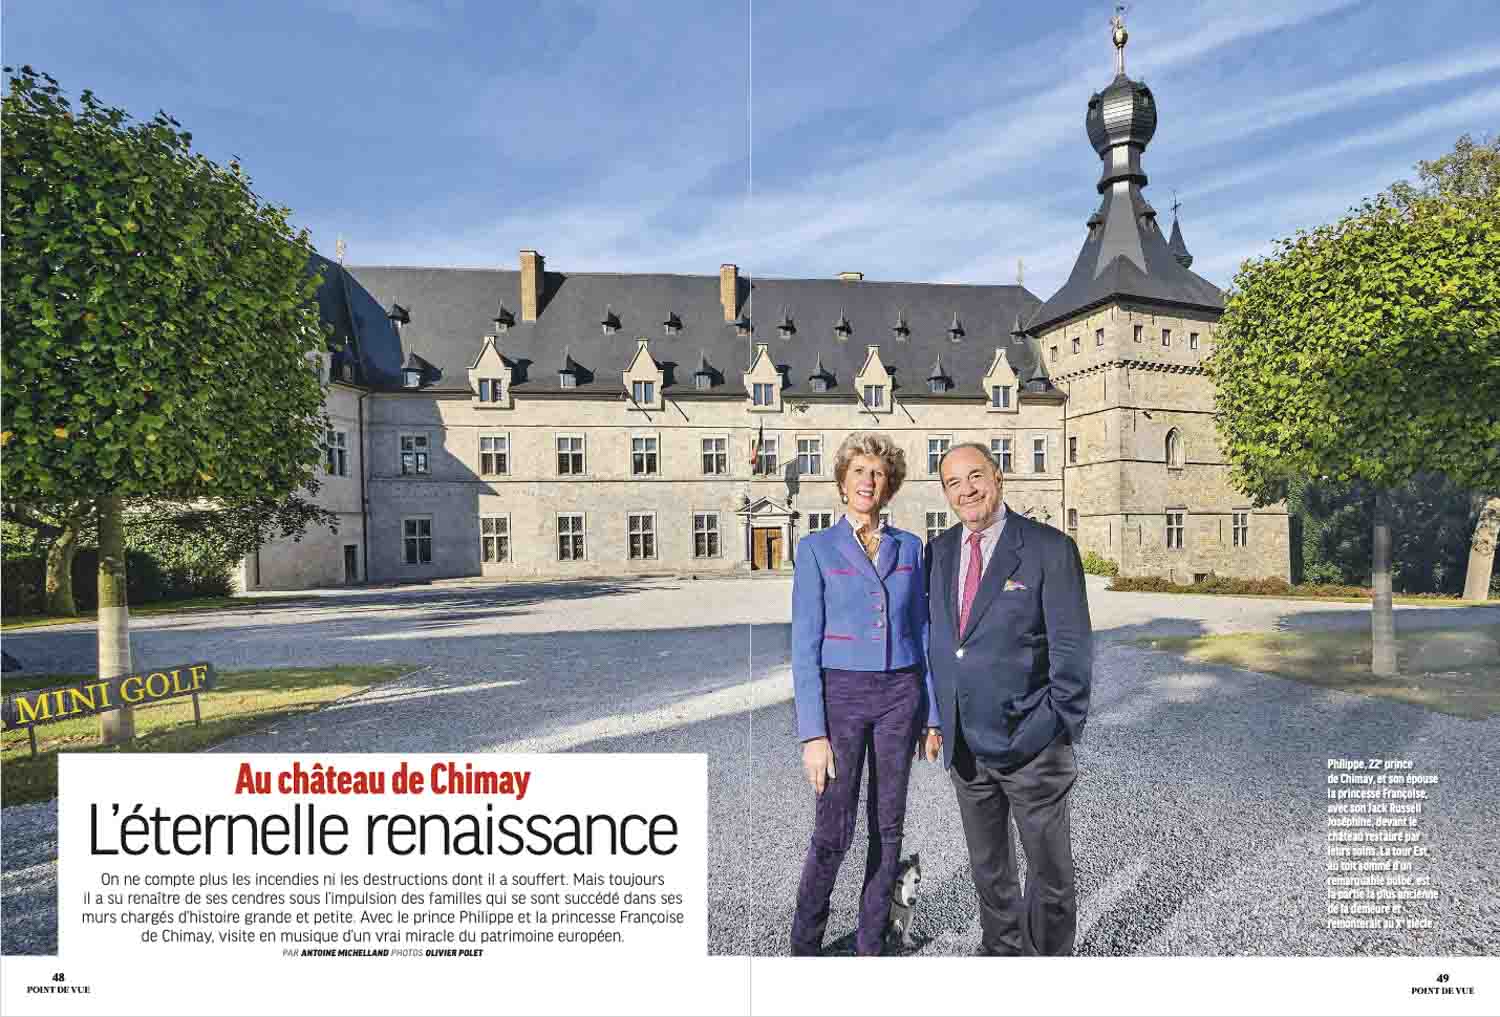 Le prince et la Princesse de Chimay posent devant le château.